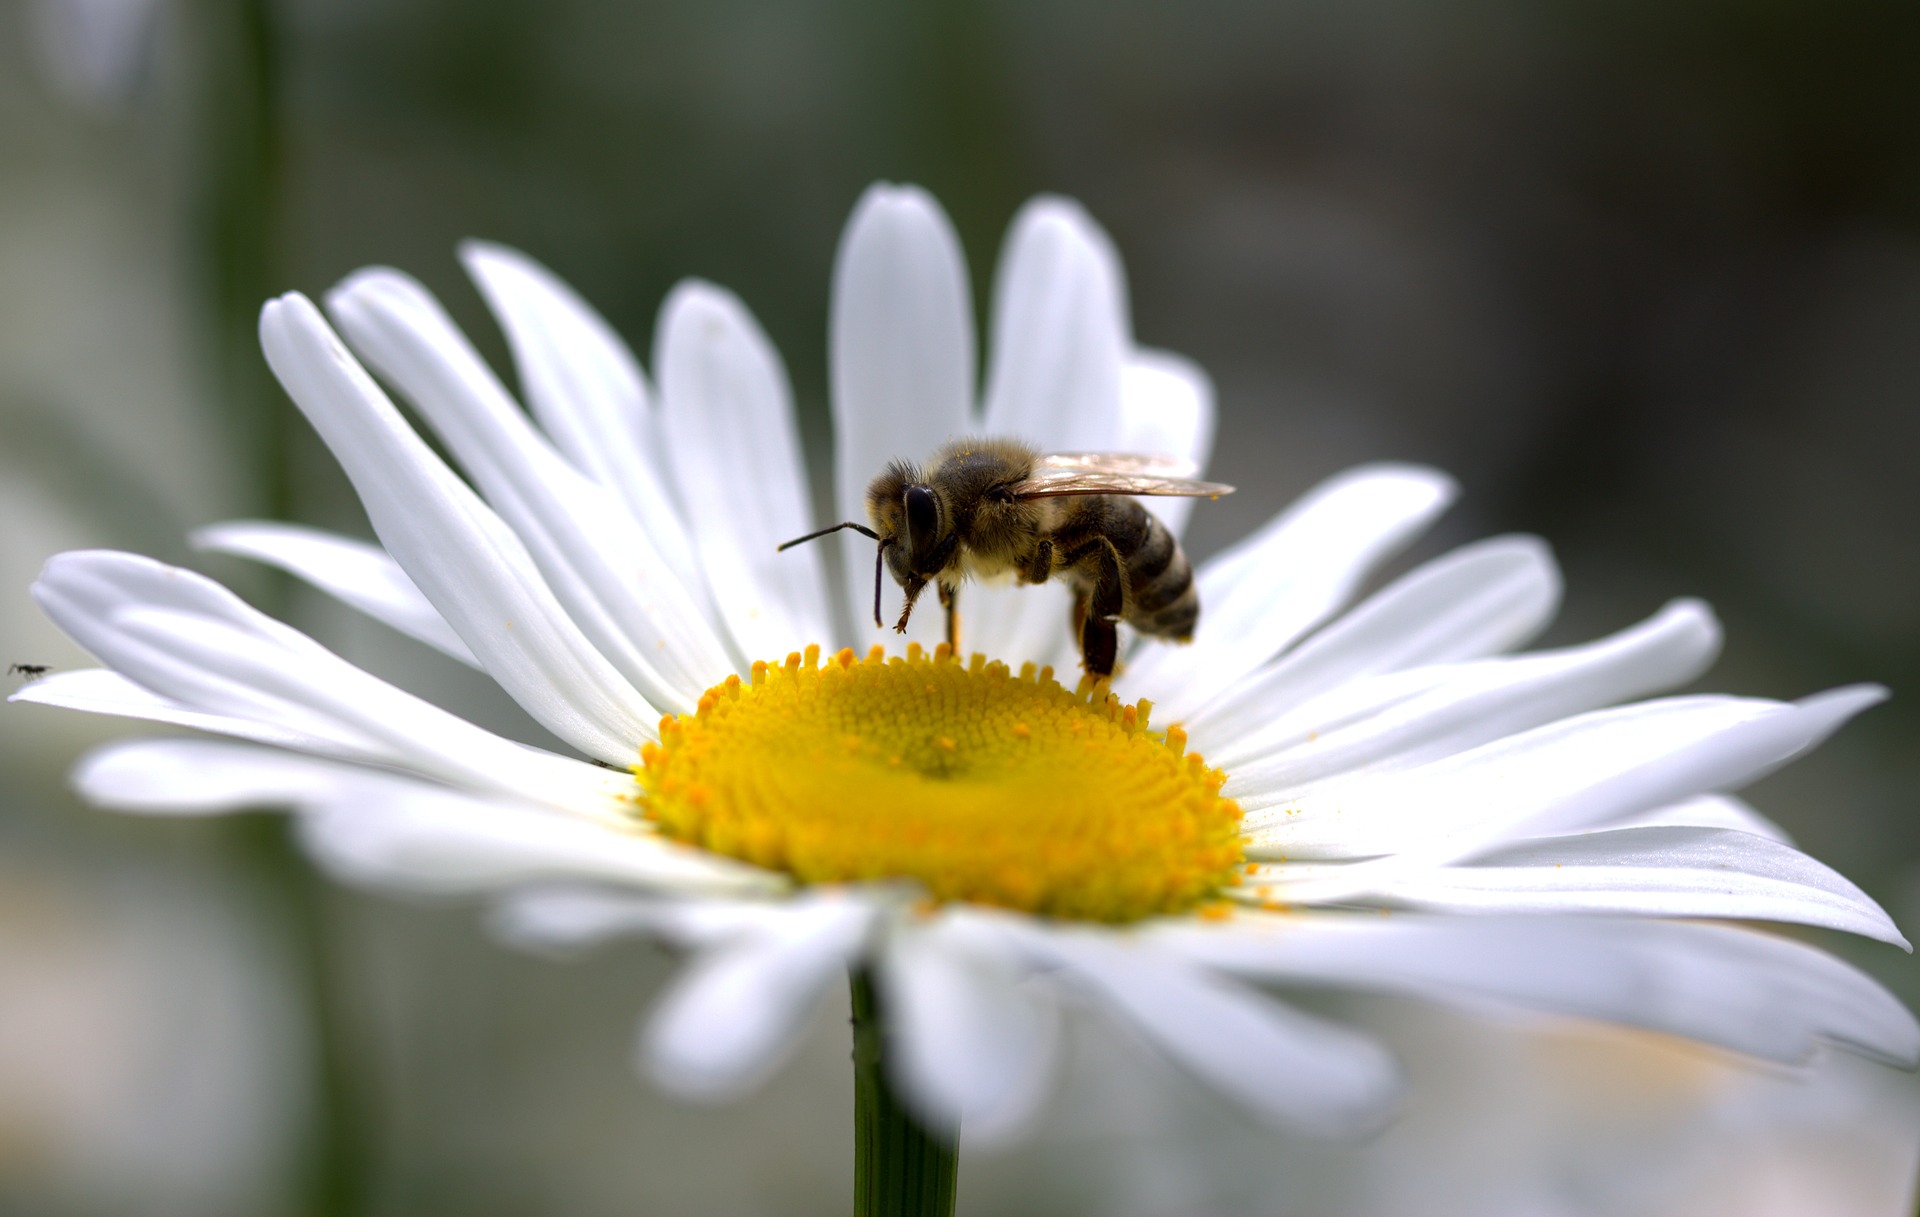 Pestitsiidid kahjustavad nii mesilasi kui inimesi